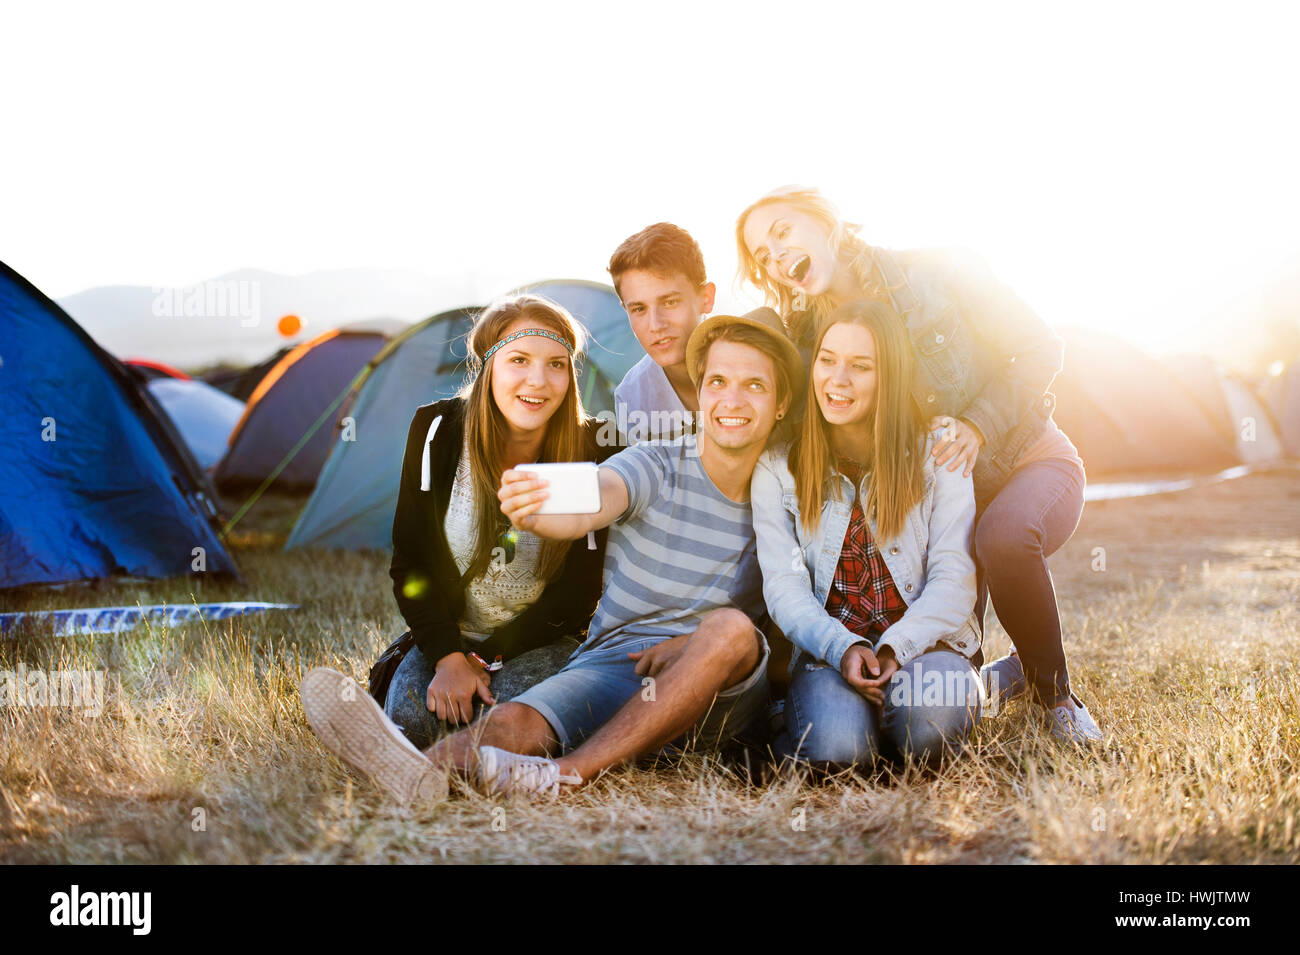 Gruppe von Teenager-Jungen und Mädchen im Sommer-Musik-Festival, auf dem Boden sitzend, die Selfie mit Smartphone Stockfoto